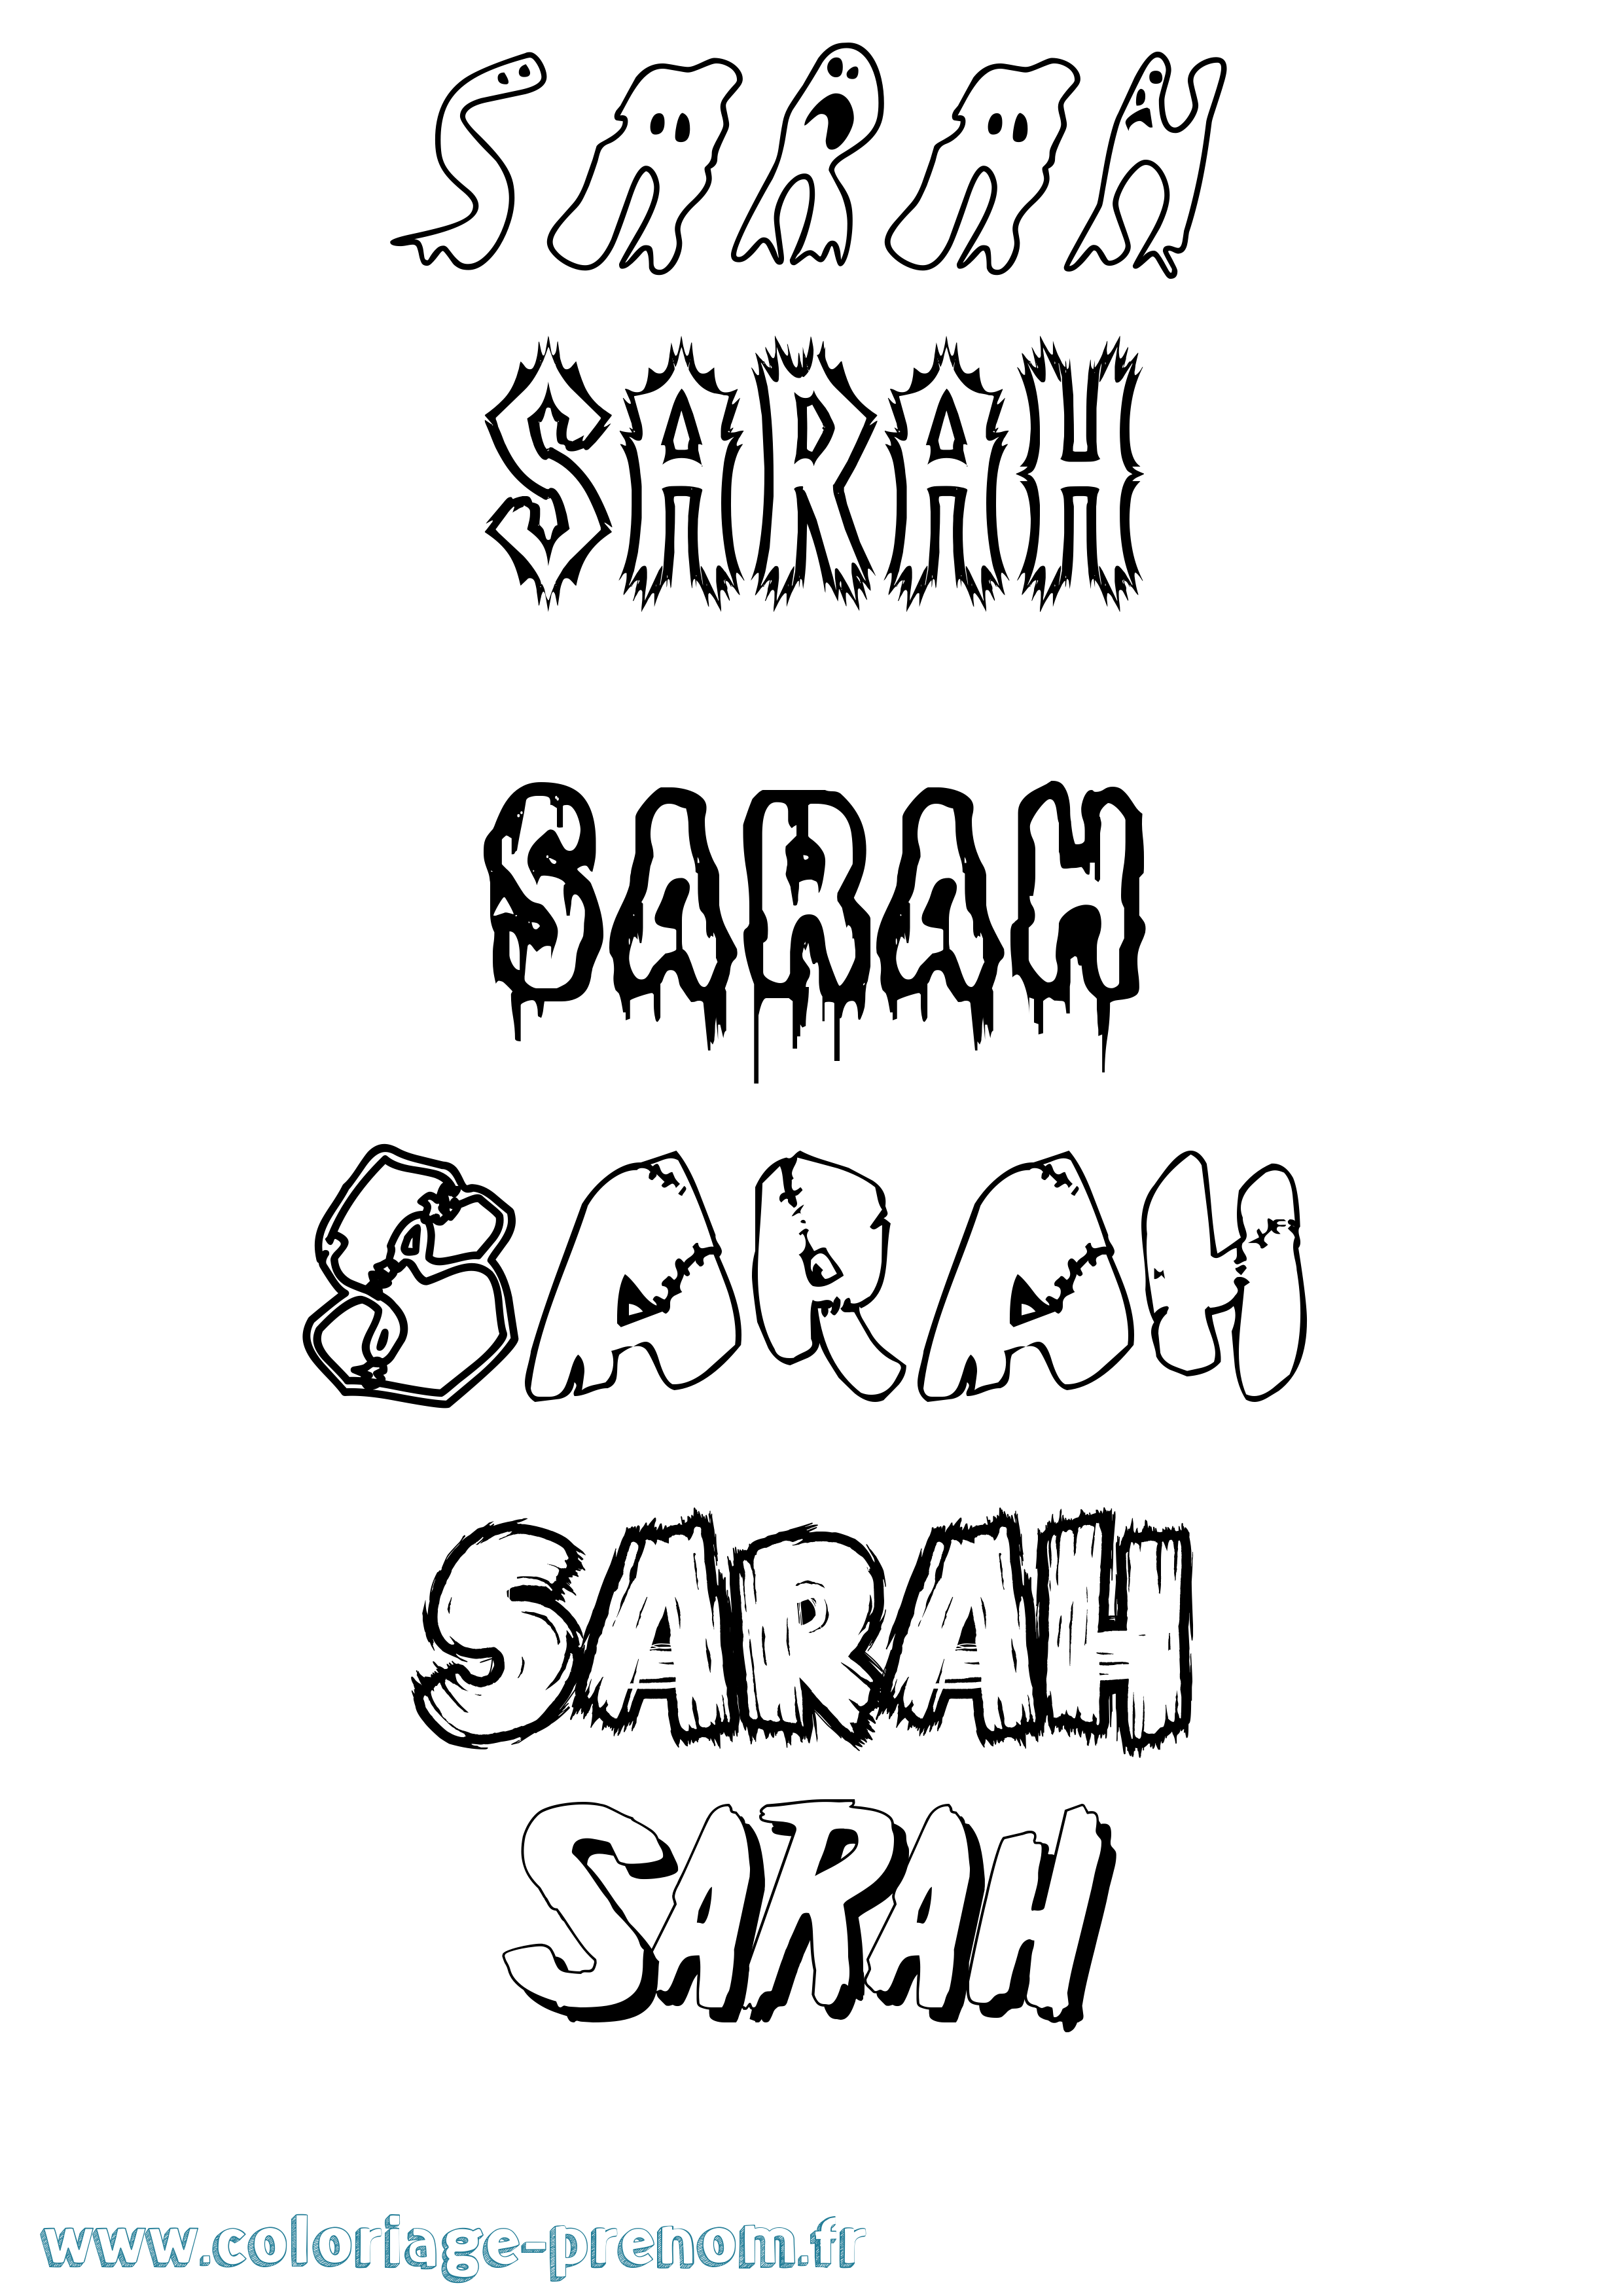 Coloriage prénom Sarah Frisson